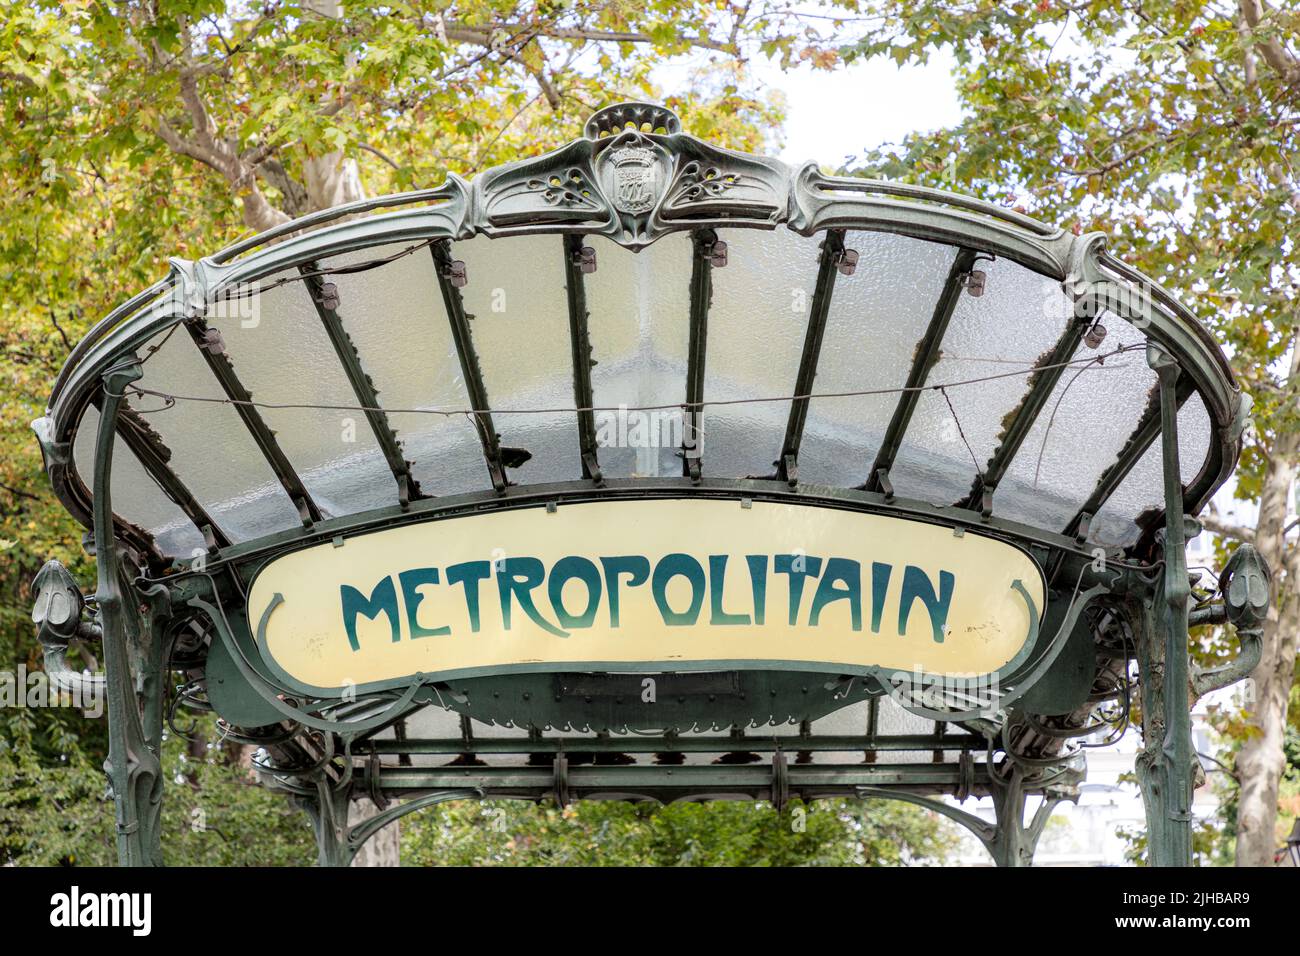 Panneau de métro et verrière de Paris - conçu par Hector Guimard, architecte et designer Art Nouveau renommé, Paris, Ile-de-France, France Banque D'Images